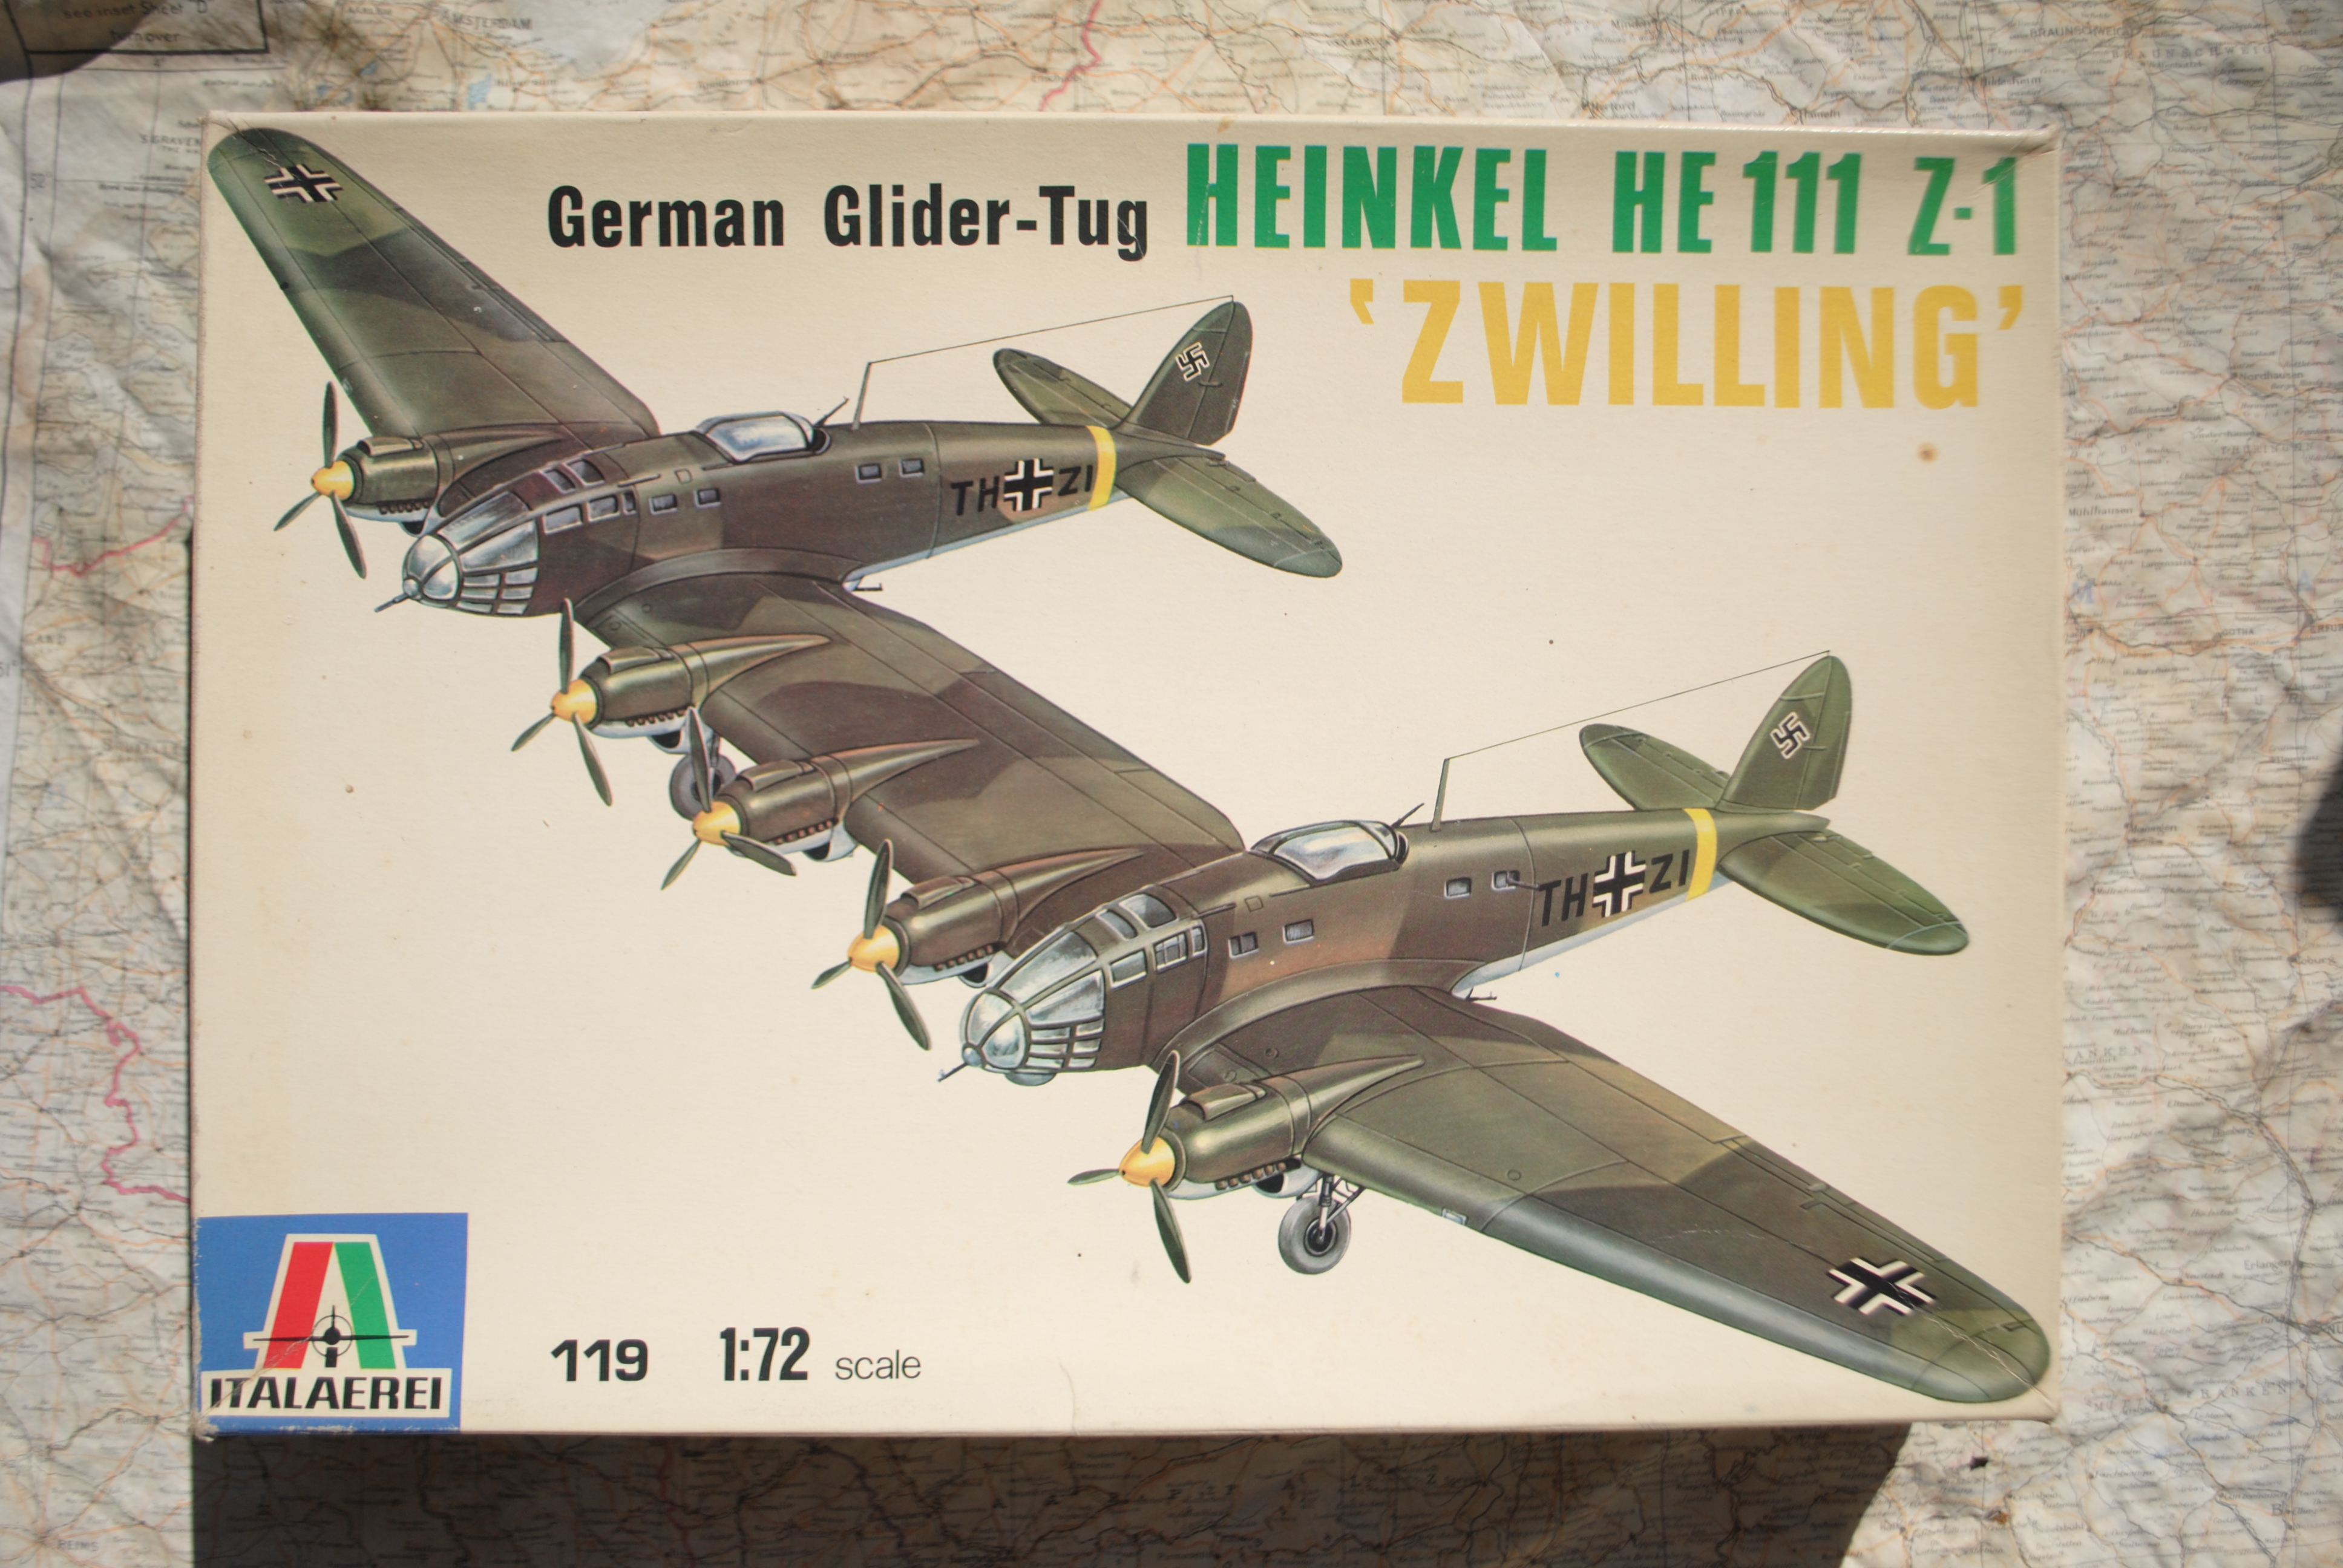 Italaerei 119 Heinkel He 111 Z-1 'Zwilling'